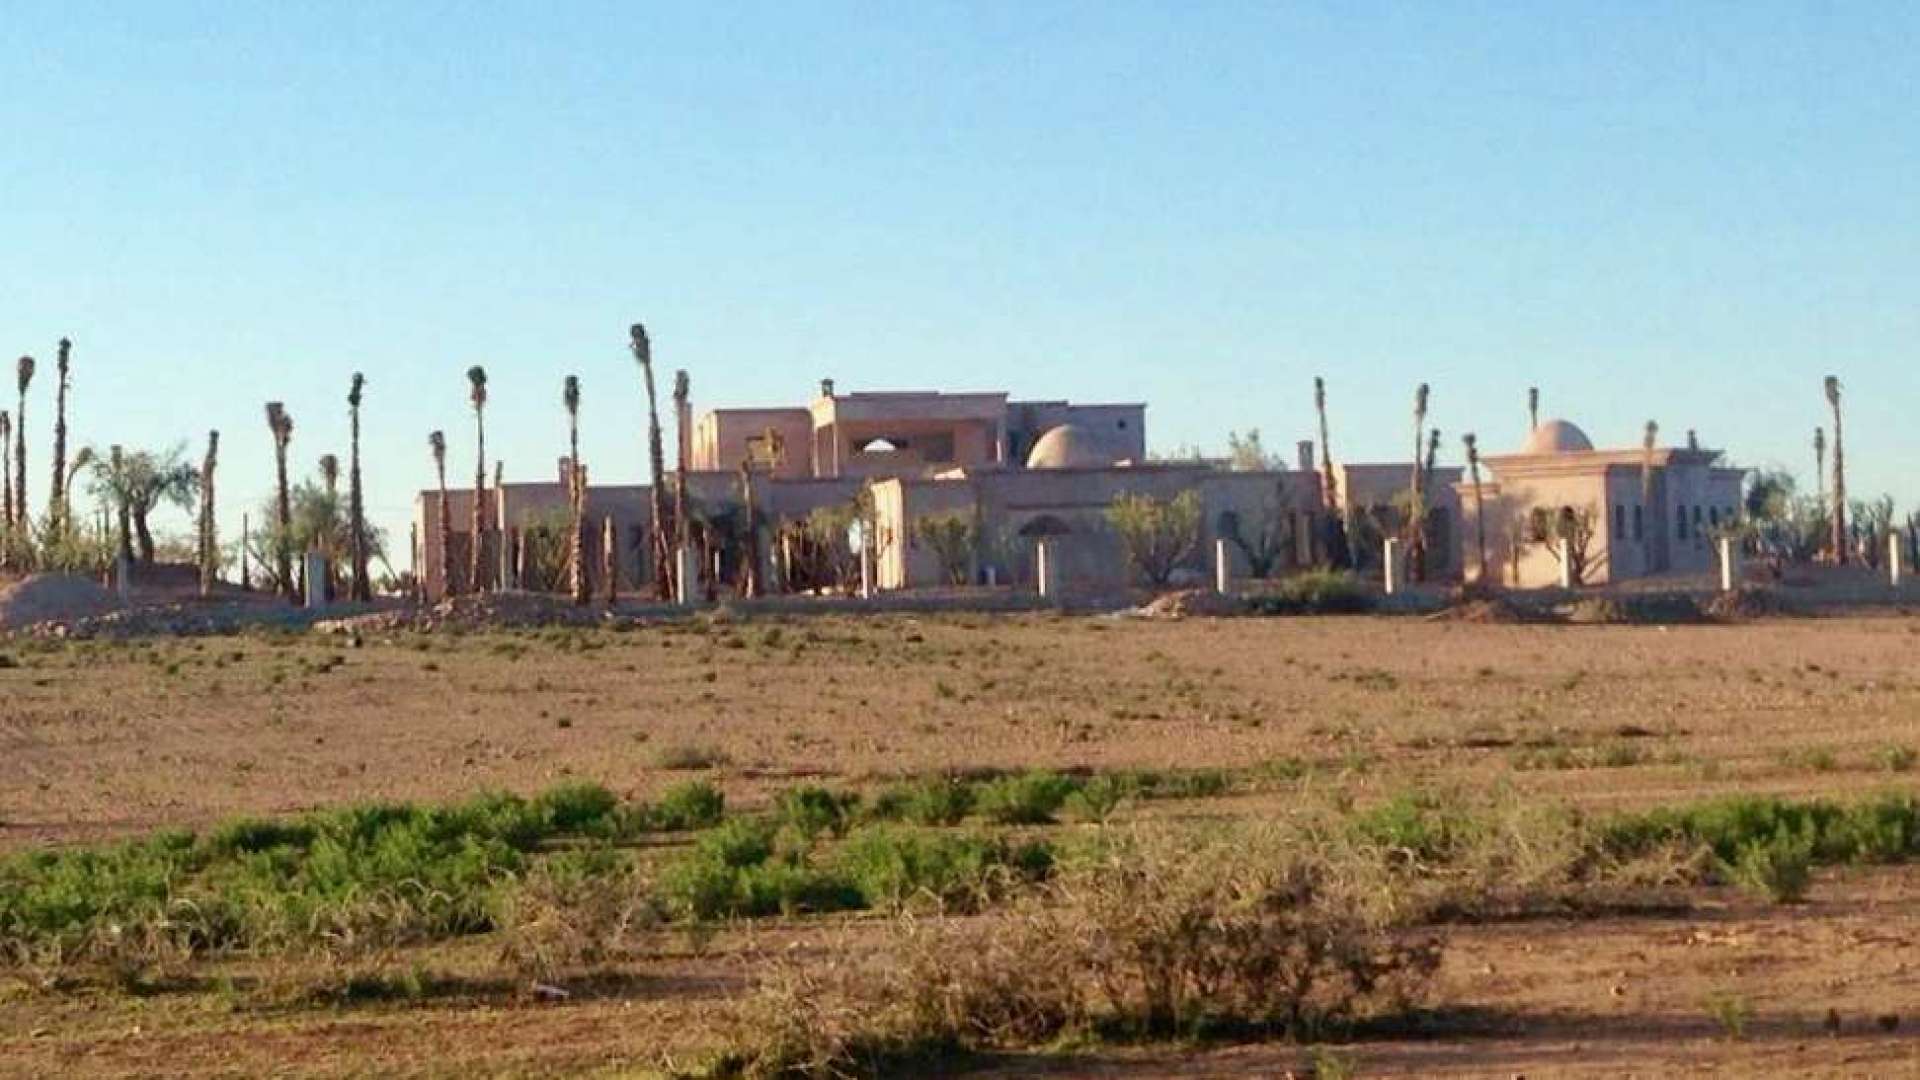 Vente,Terrains & Fermes,Terrains titrés d'1 Hectare pour construction de villas à 10 min. du Grand Stade de Marrakech,Marrakech,Tamellalt